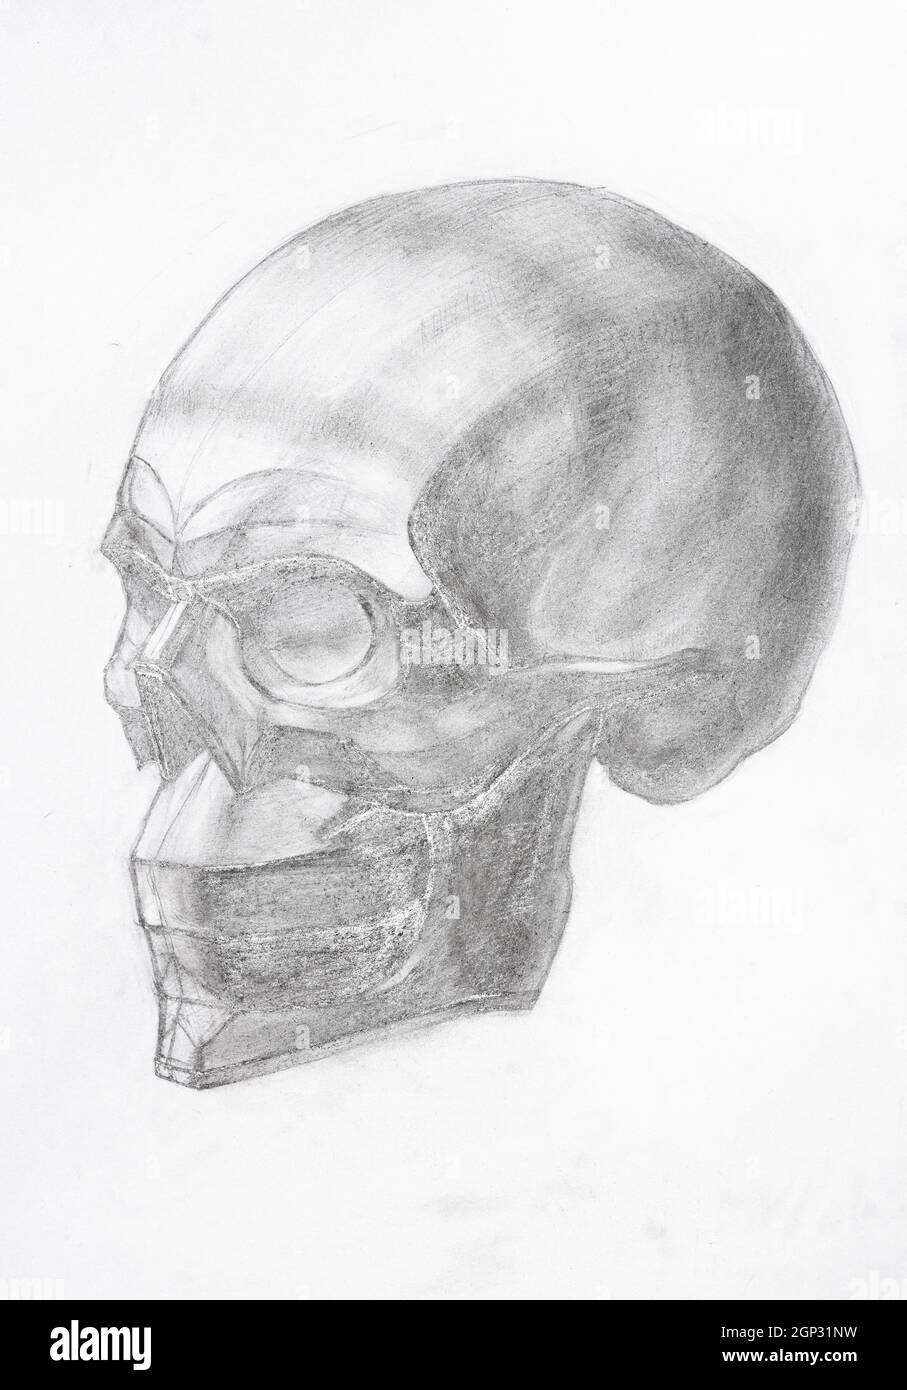 dibujo académico - cráneo humano dibujado a mano por un lápiz de grafito libro blanco Foto de stock